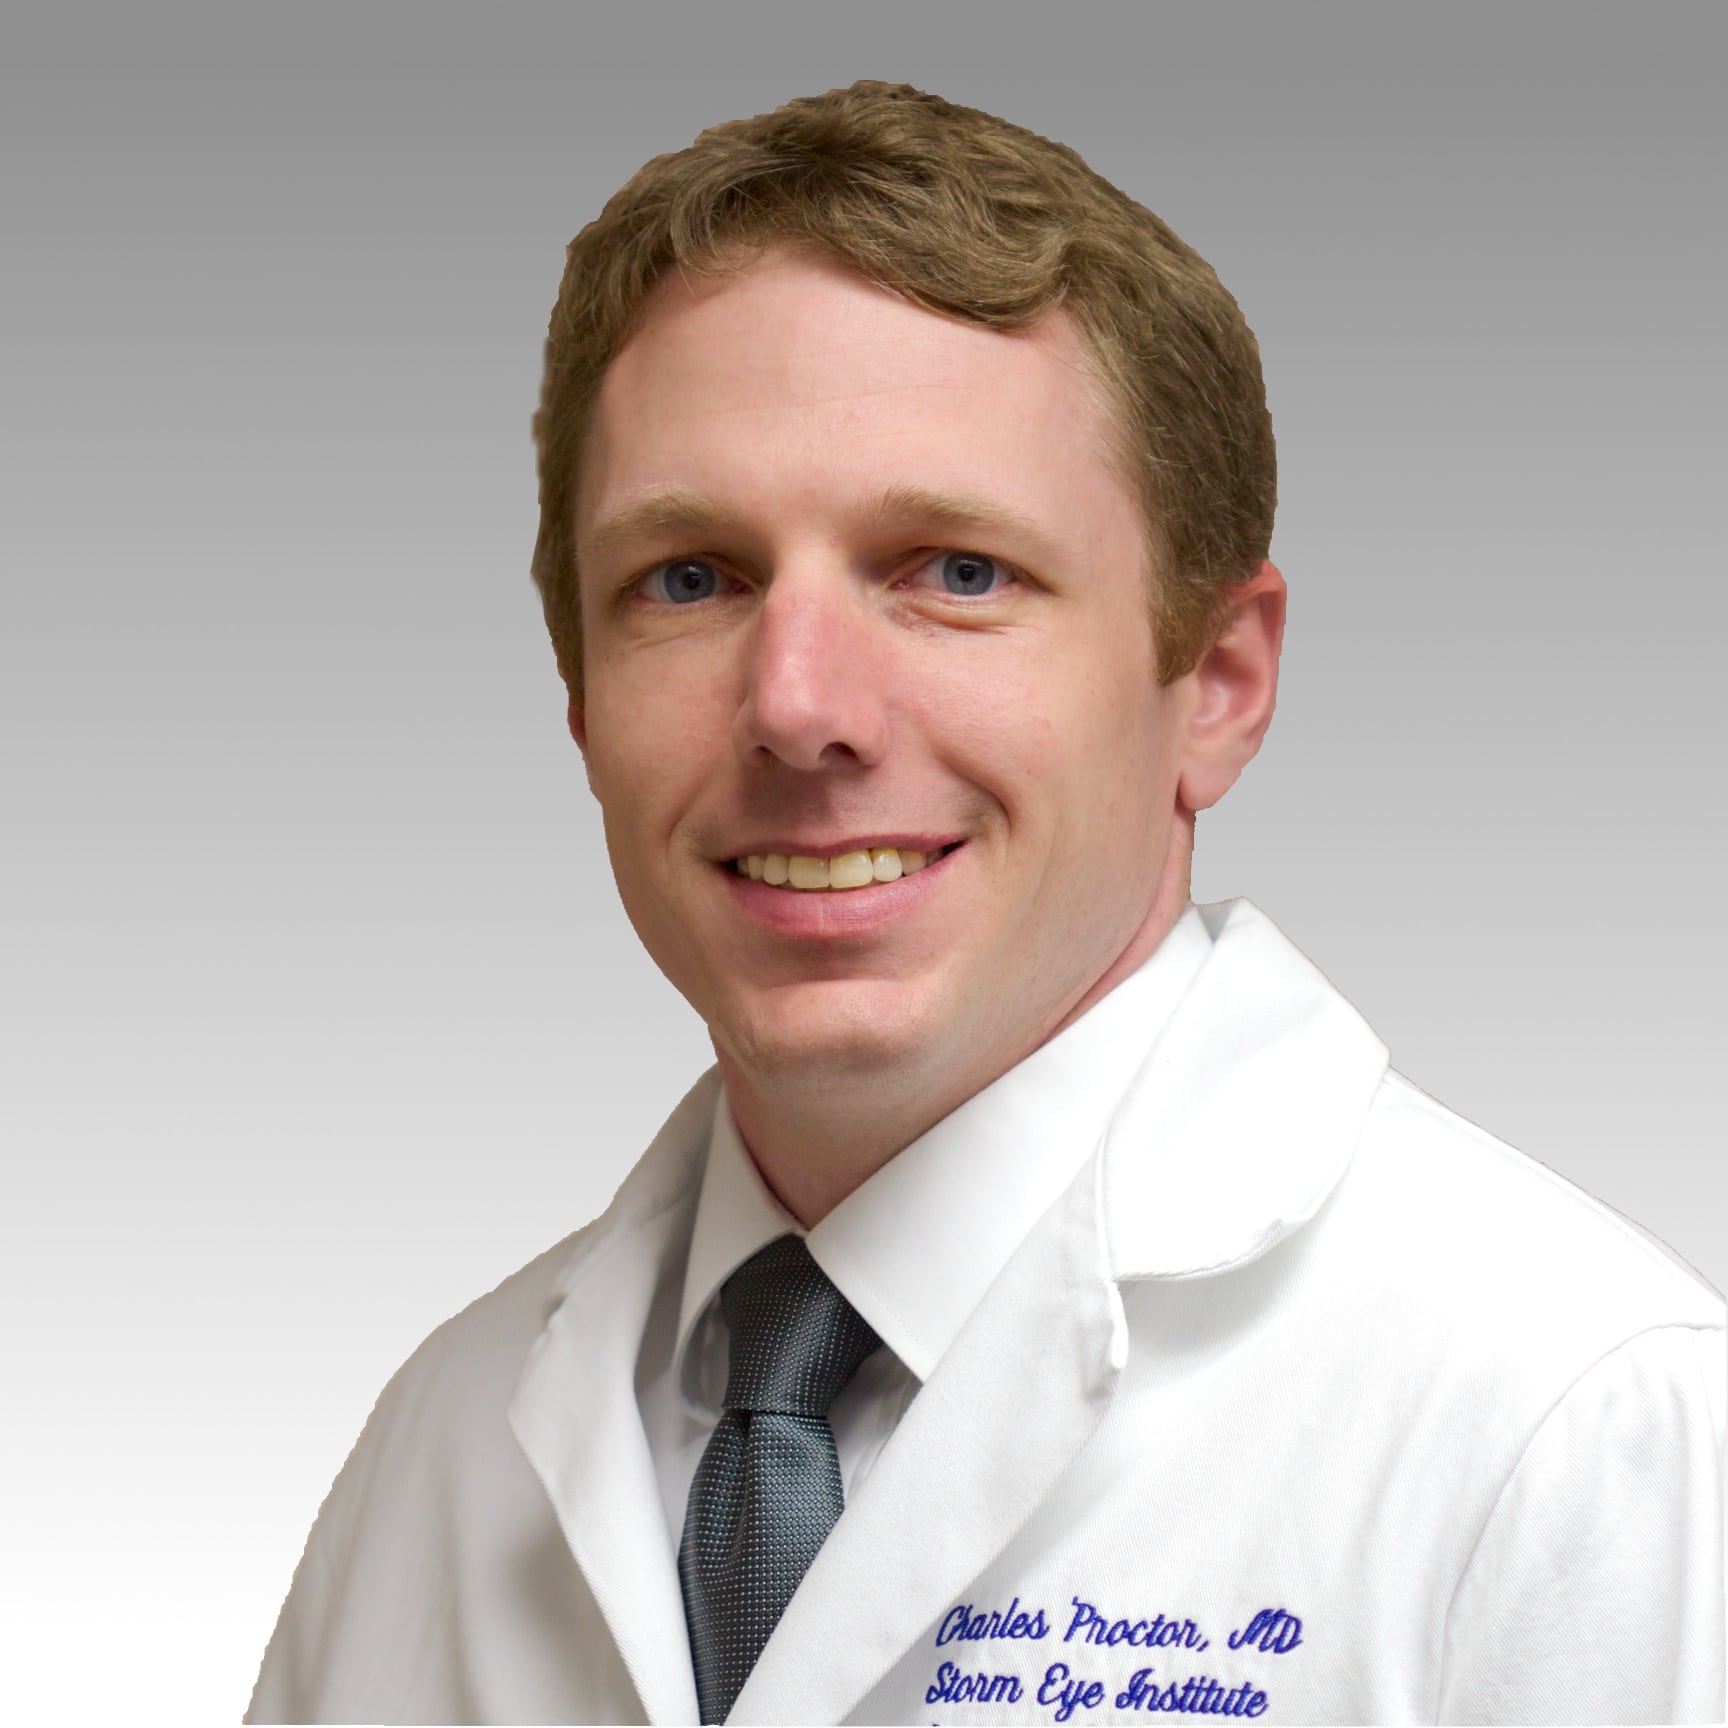 Dr. Charles Medlock Proctor, MD